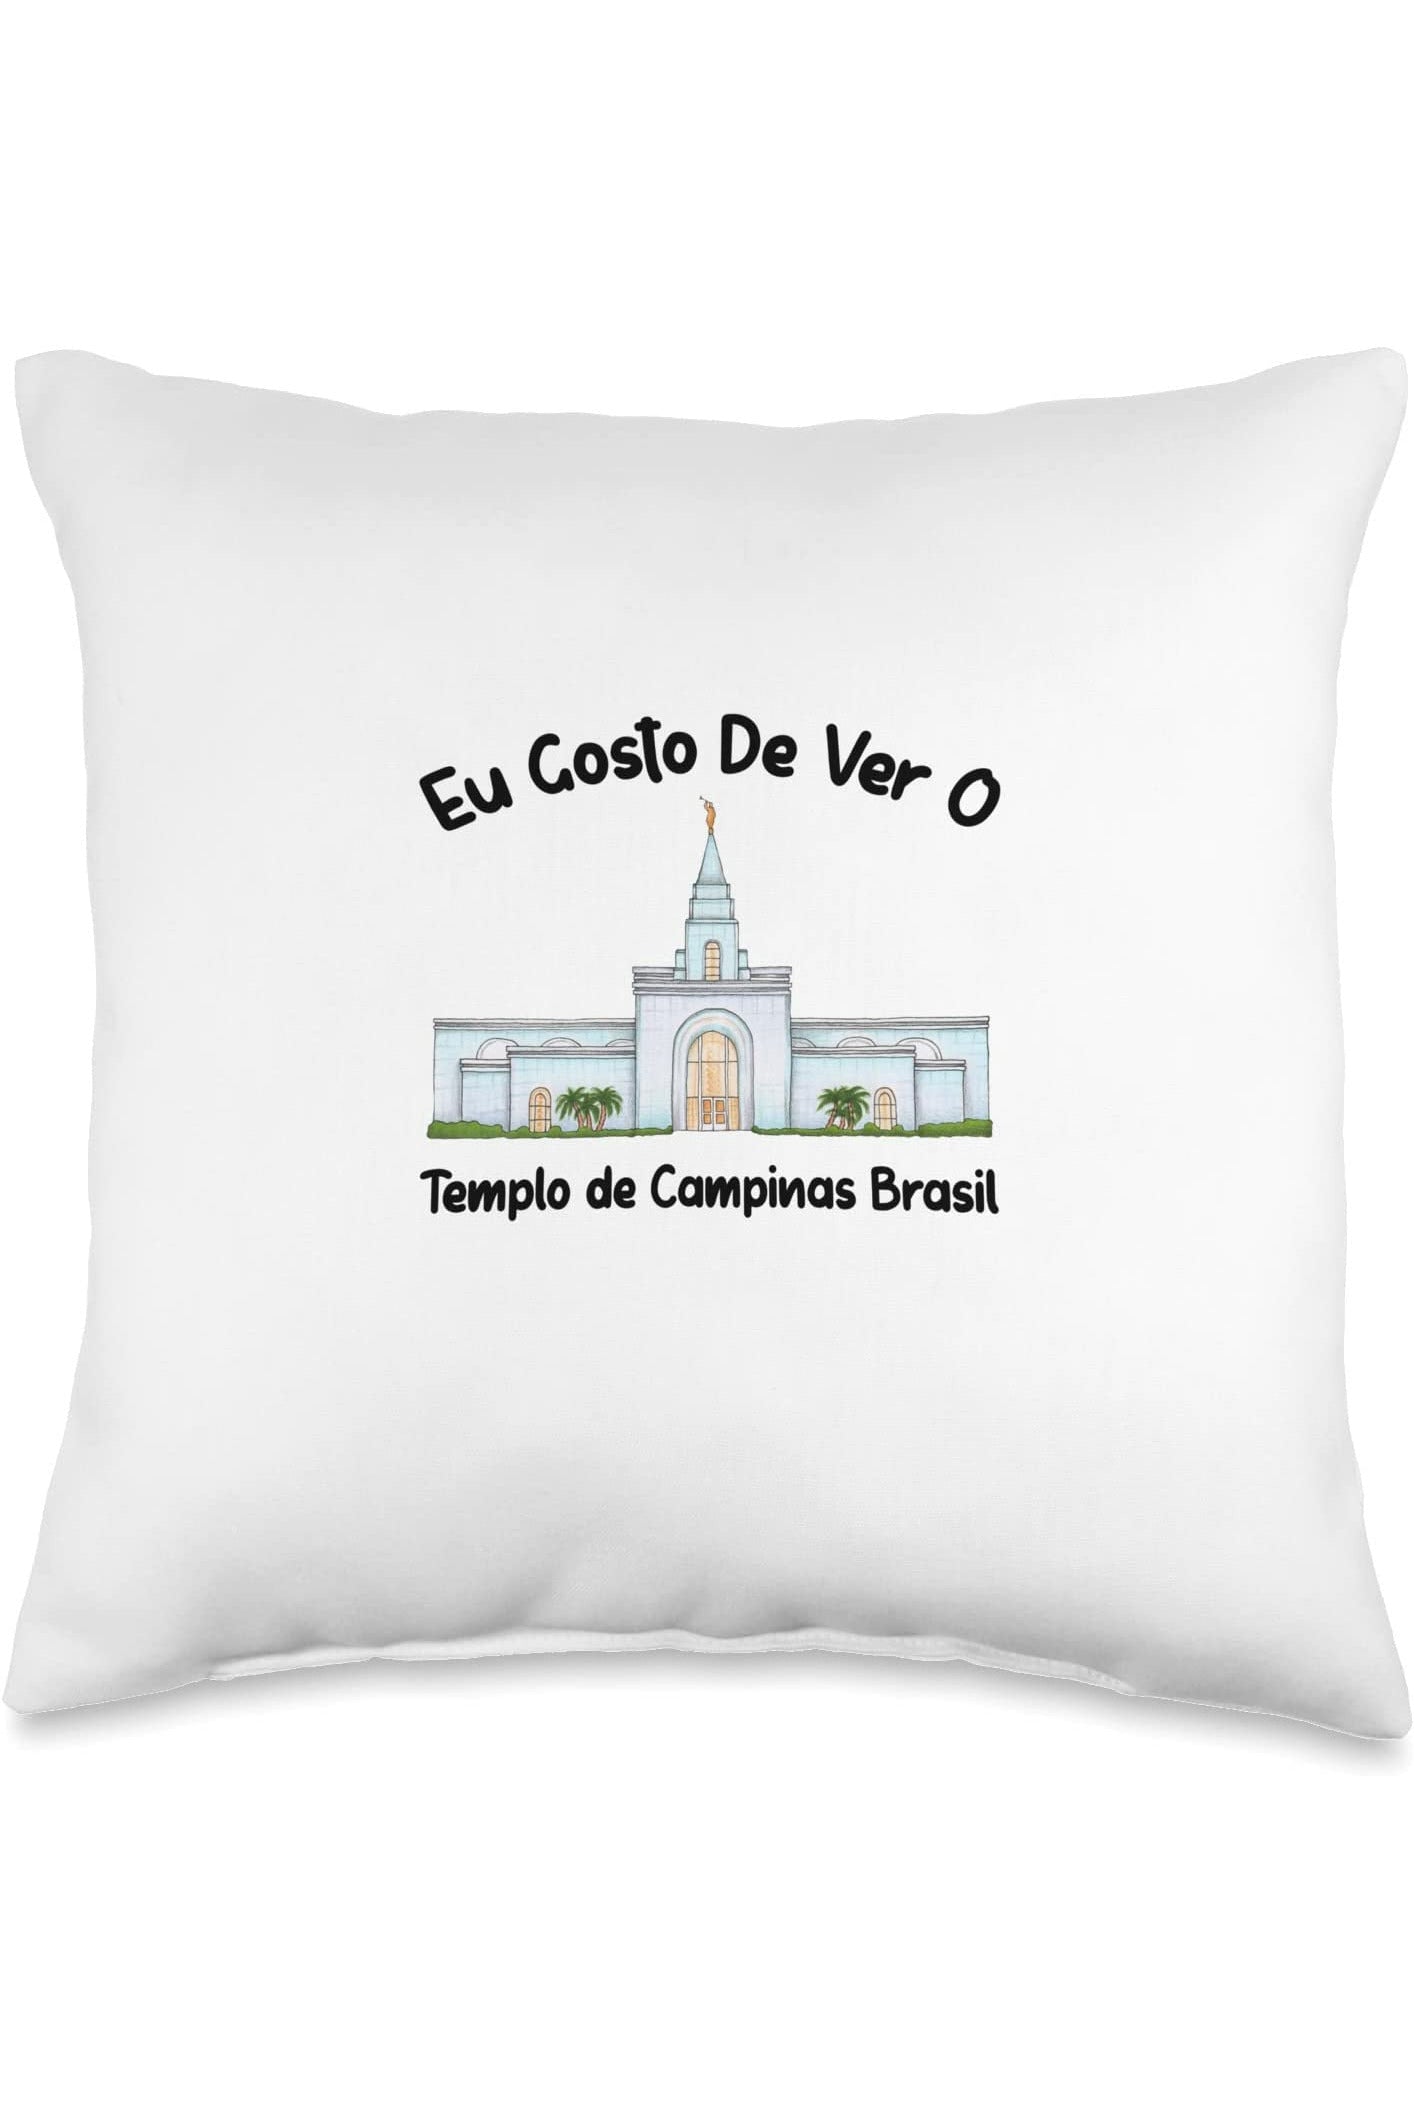 Templo de Manaus Brasil Throw Pillows - Primary Style (Portuguese) US